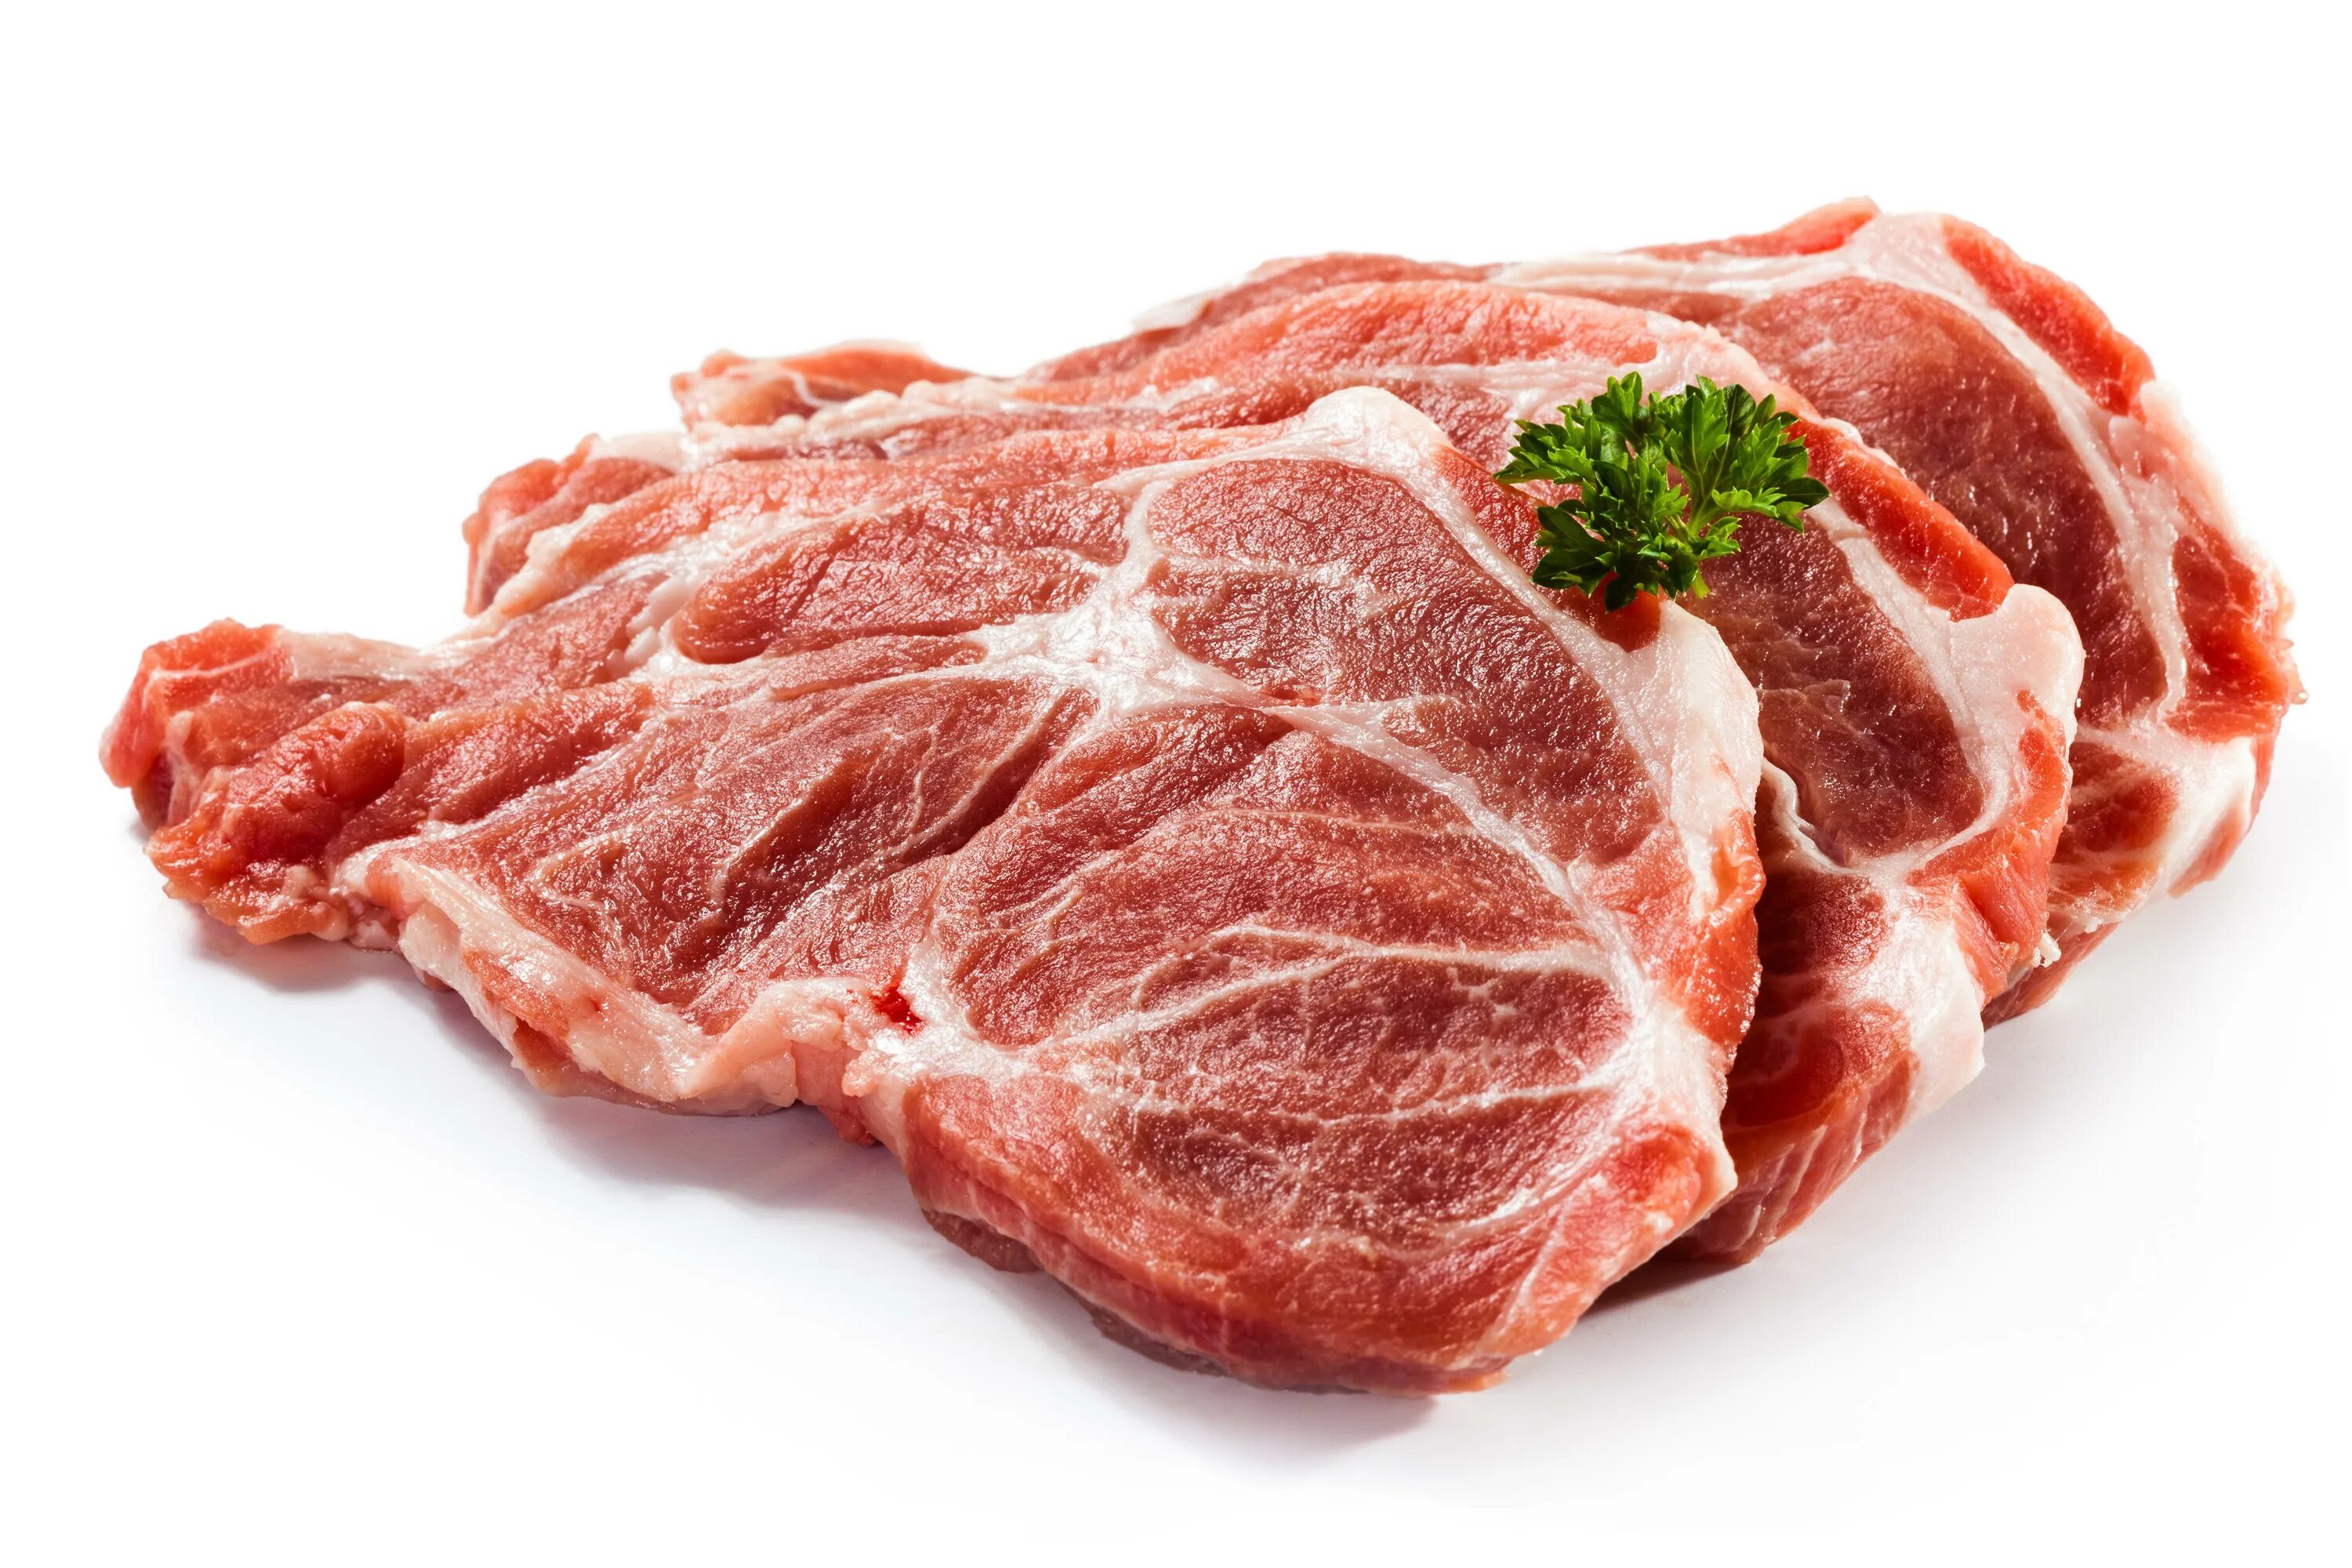 Мясо на белом фоне. Мясо свинины на белом фоне. Свинина на белом фоне. Мясо свинина говядина баранина.